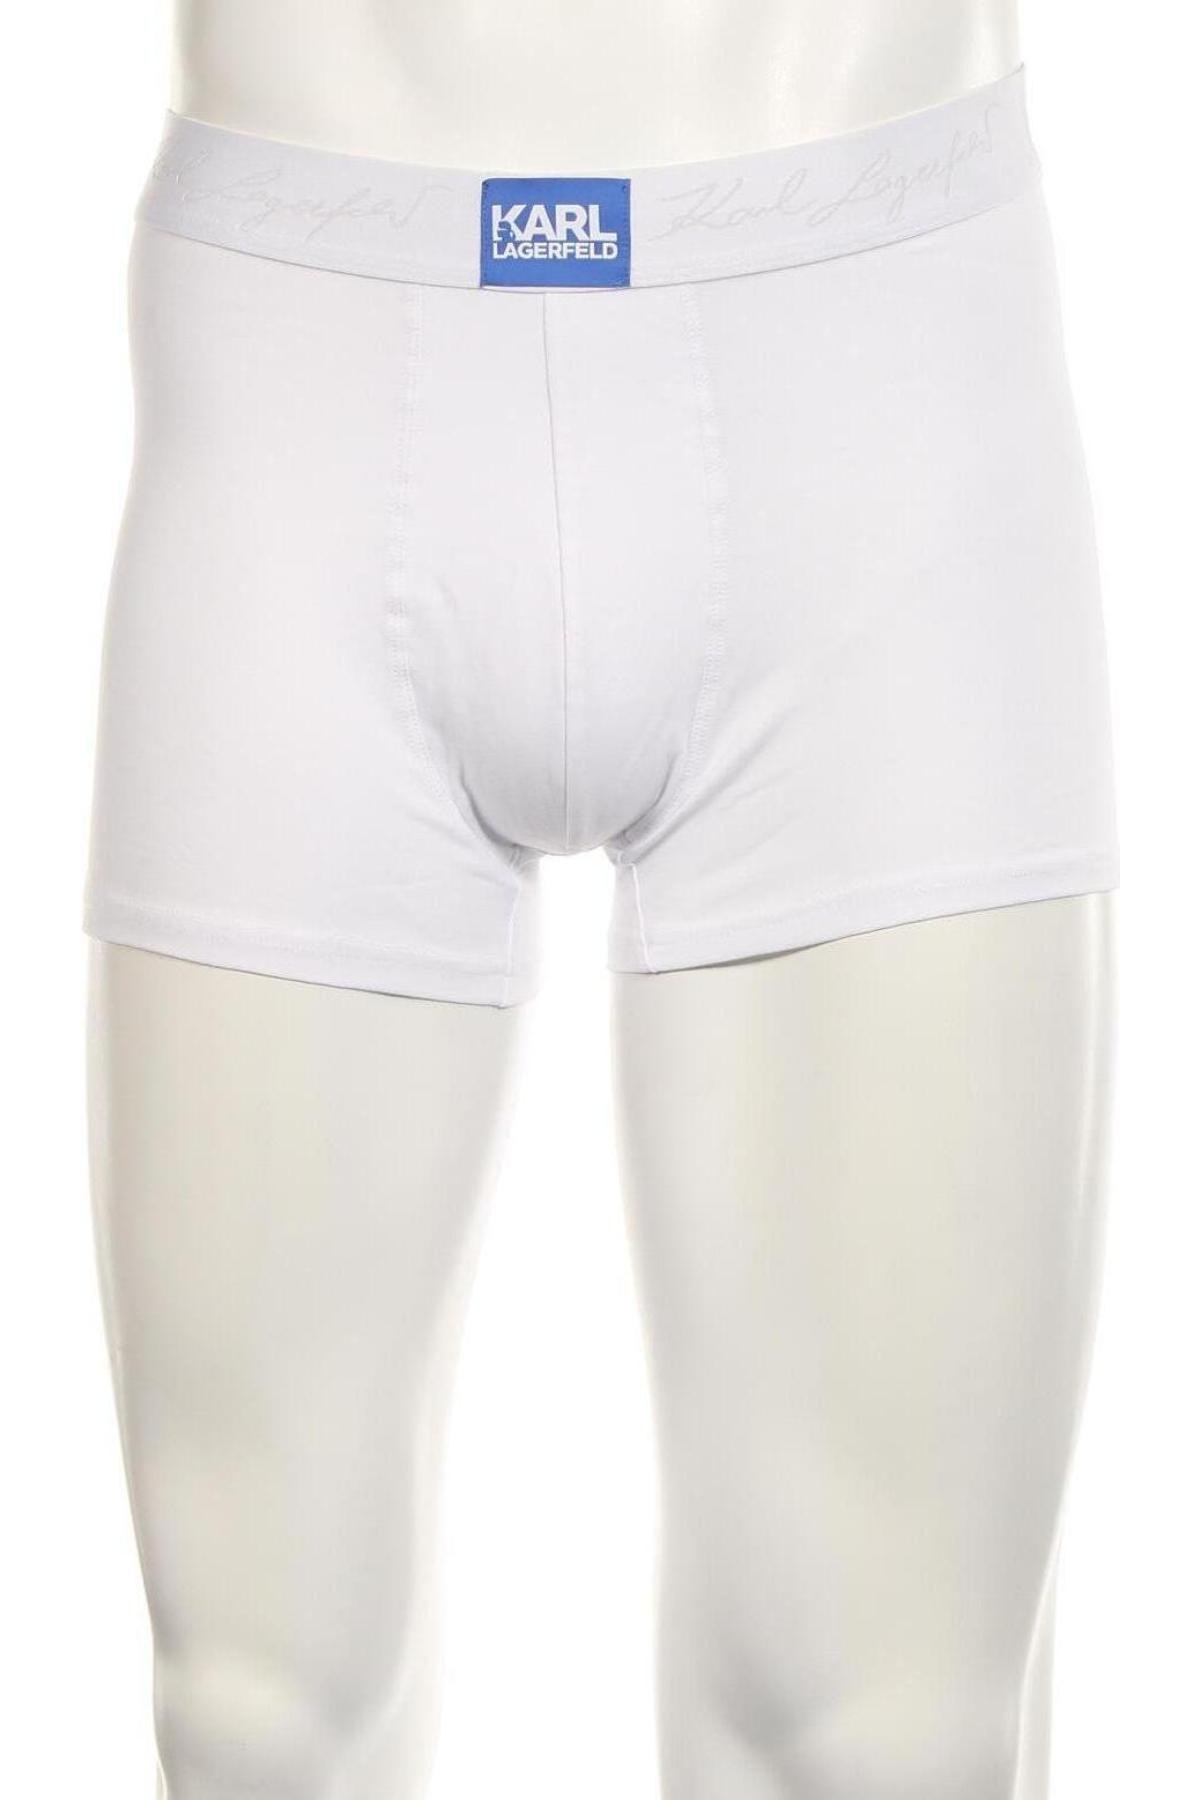 Ανδρικά μποξεράκια Karl Lagerfeld, Μέγεθος M, Χρώμα Λευκό, Τιμή 39,00 €